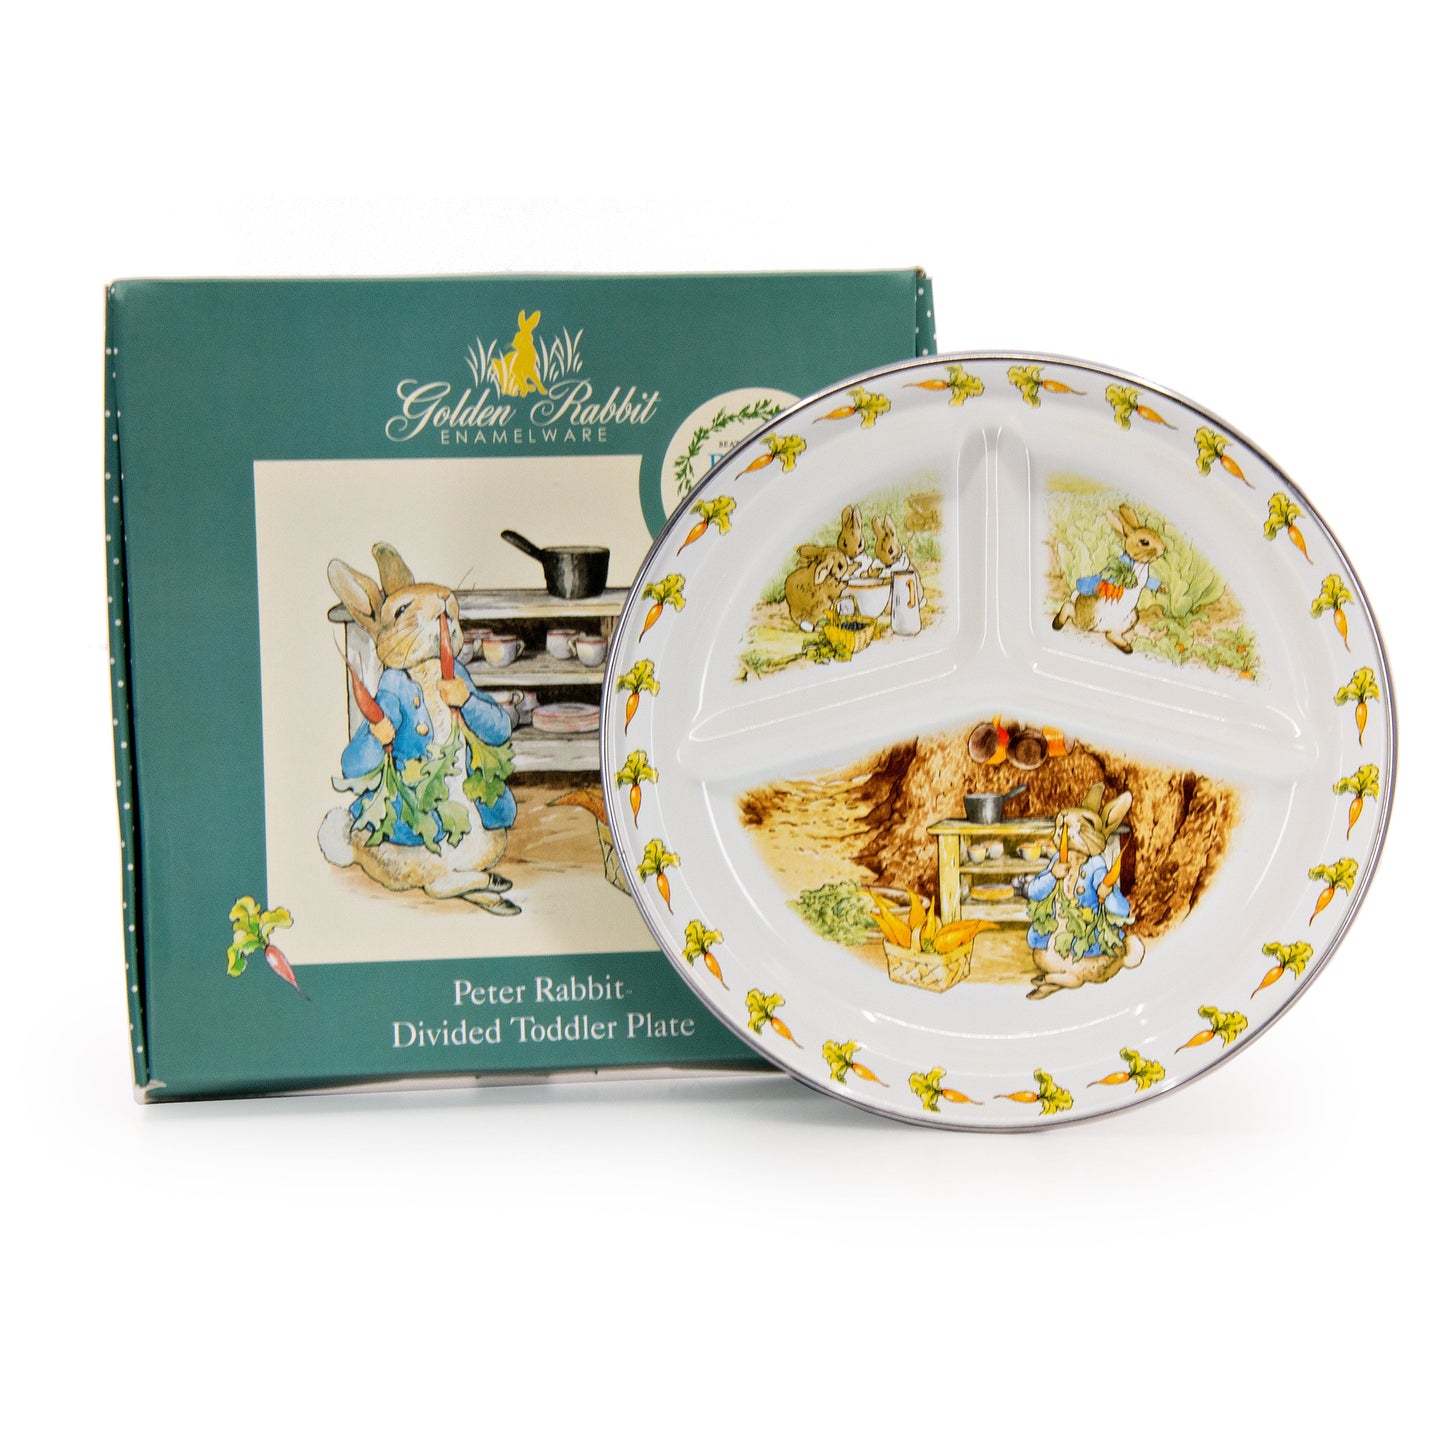 Golden Rabbit Toddler Plates divided enamel plates for kids peter rabbit